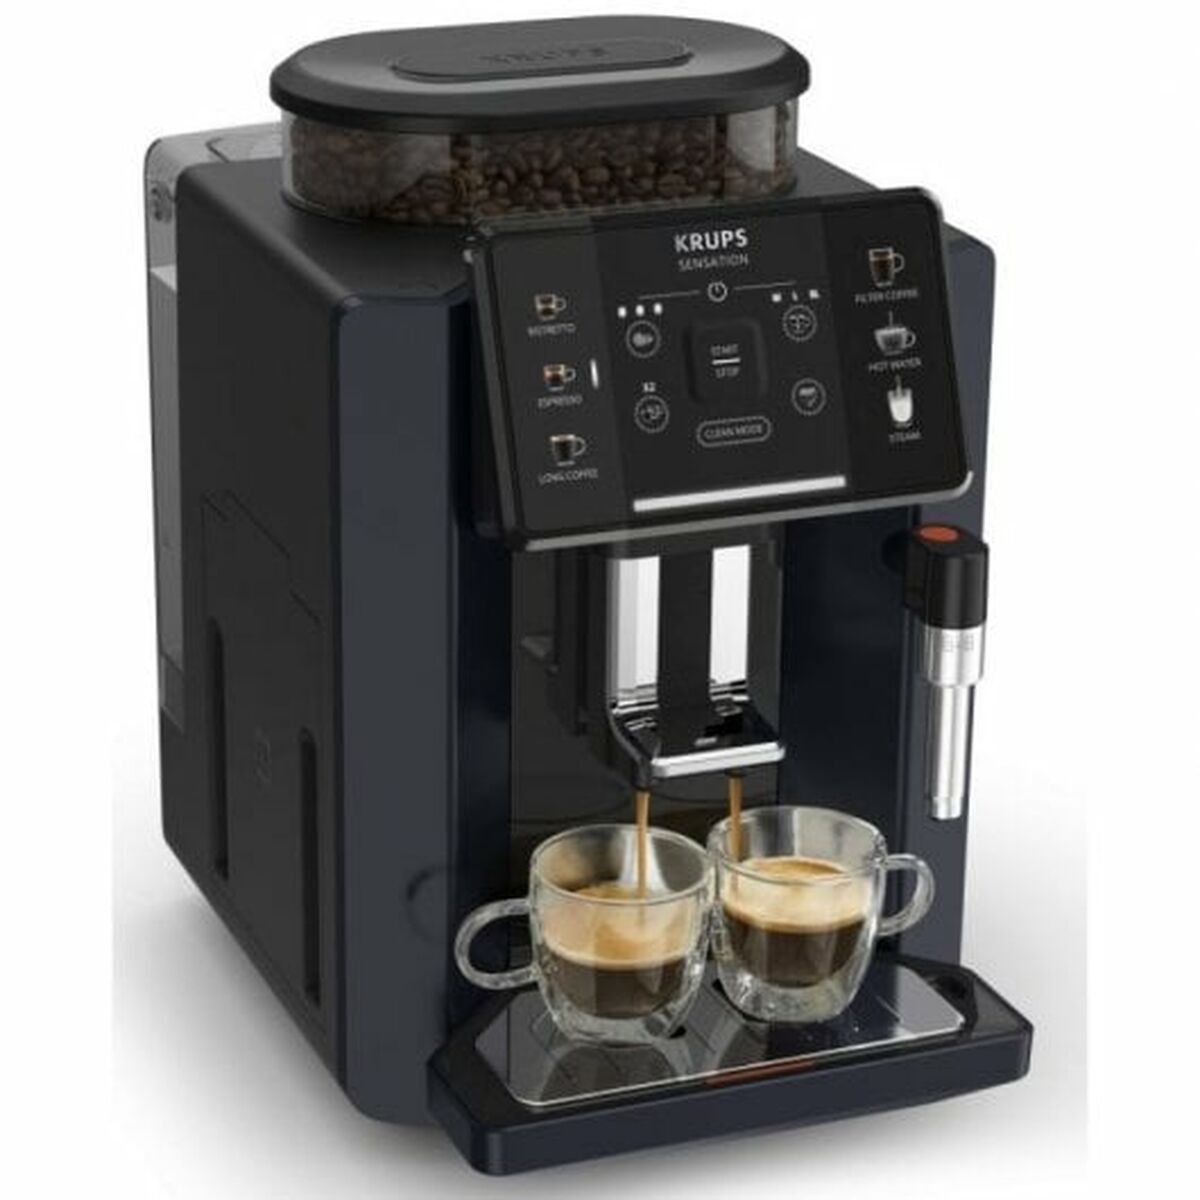 Superautomatische Kaffeemaschine Krups Sensation C50 15 bar Schwarz 1450 W - CA International 